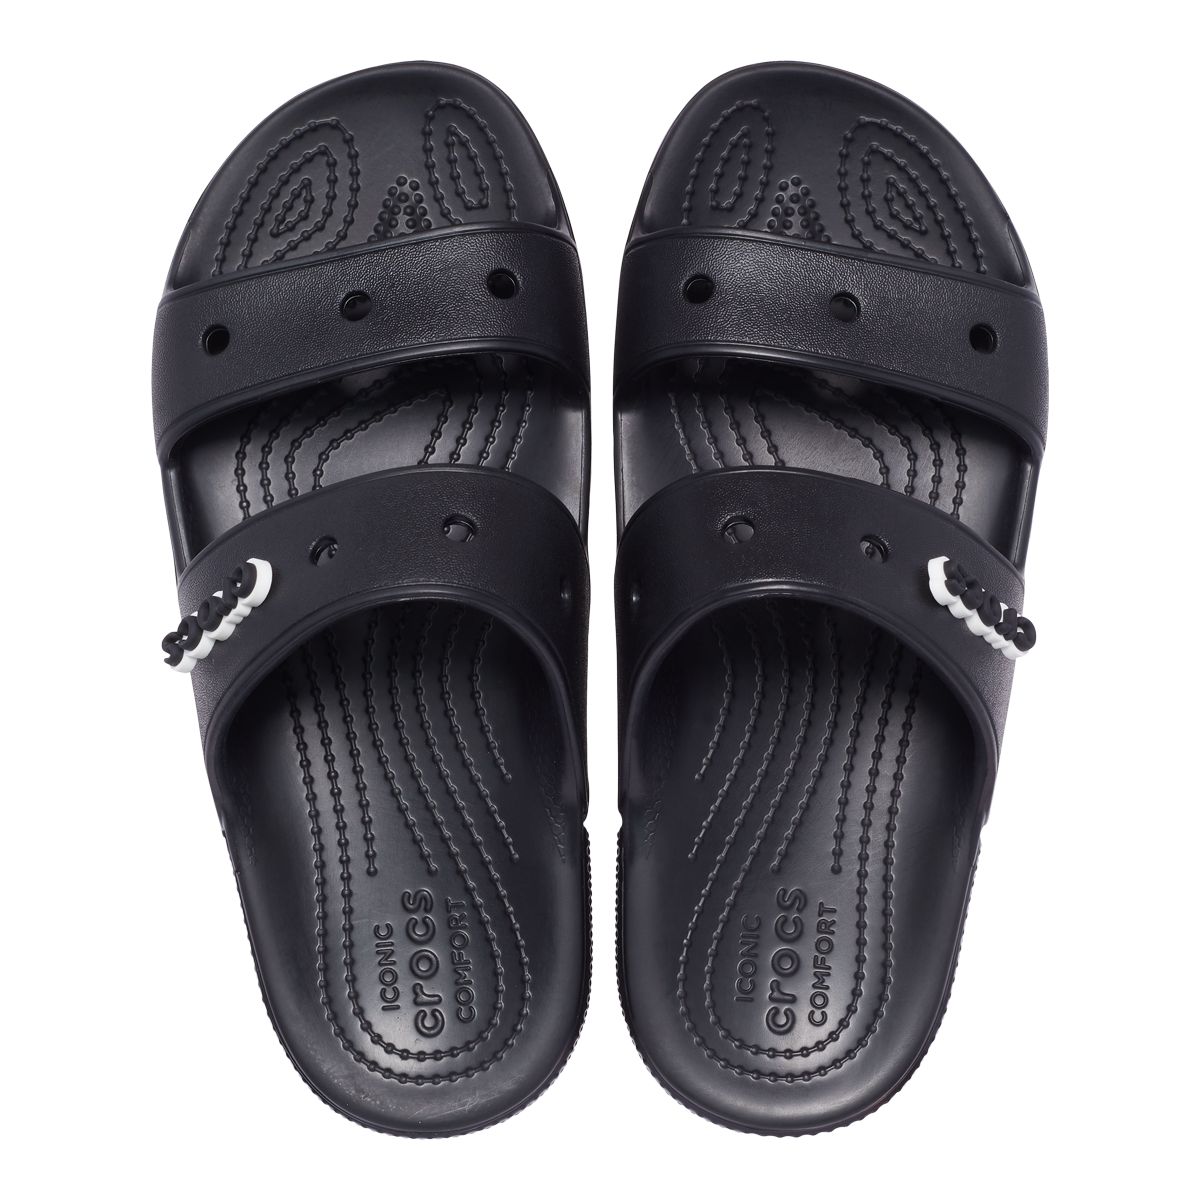 CROCS, Shoes, Crocs Nylon Hook Loop Closure Comfort Fishing Sport Sandals  Black Mens Size 9m